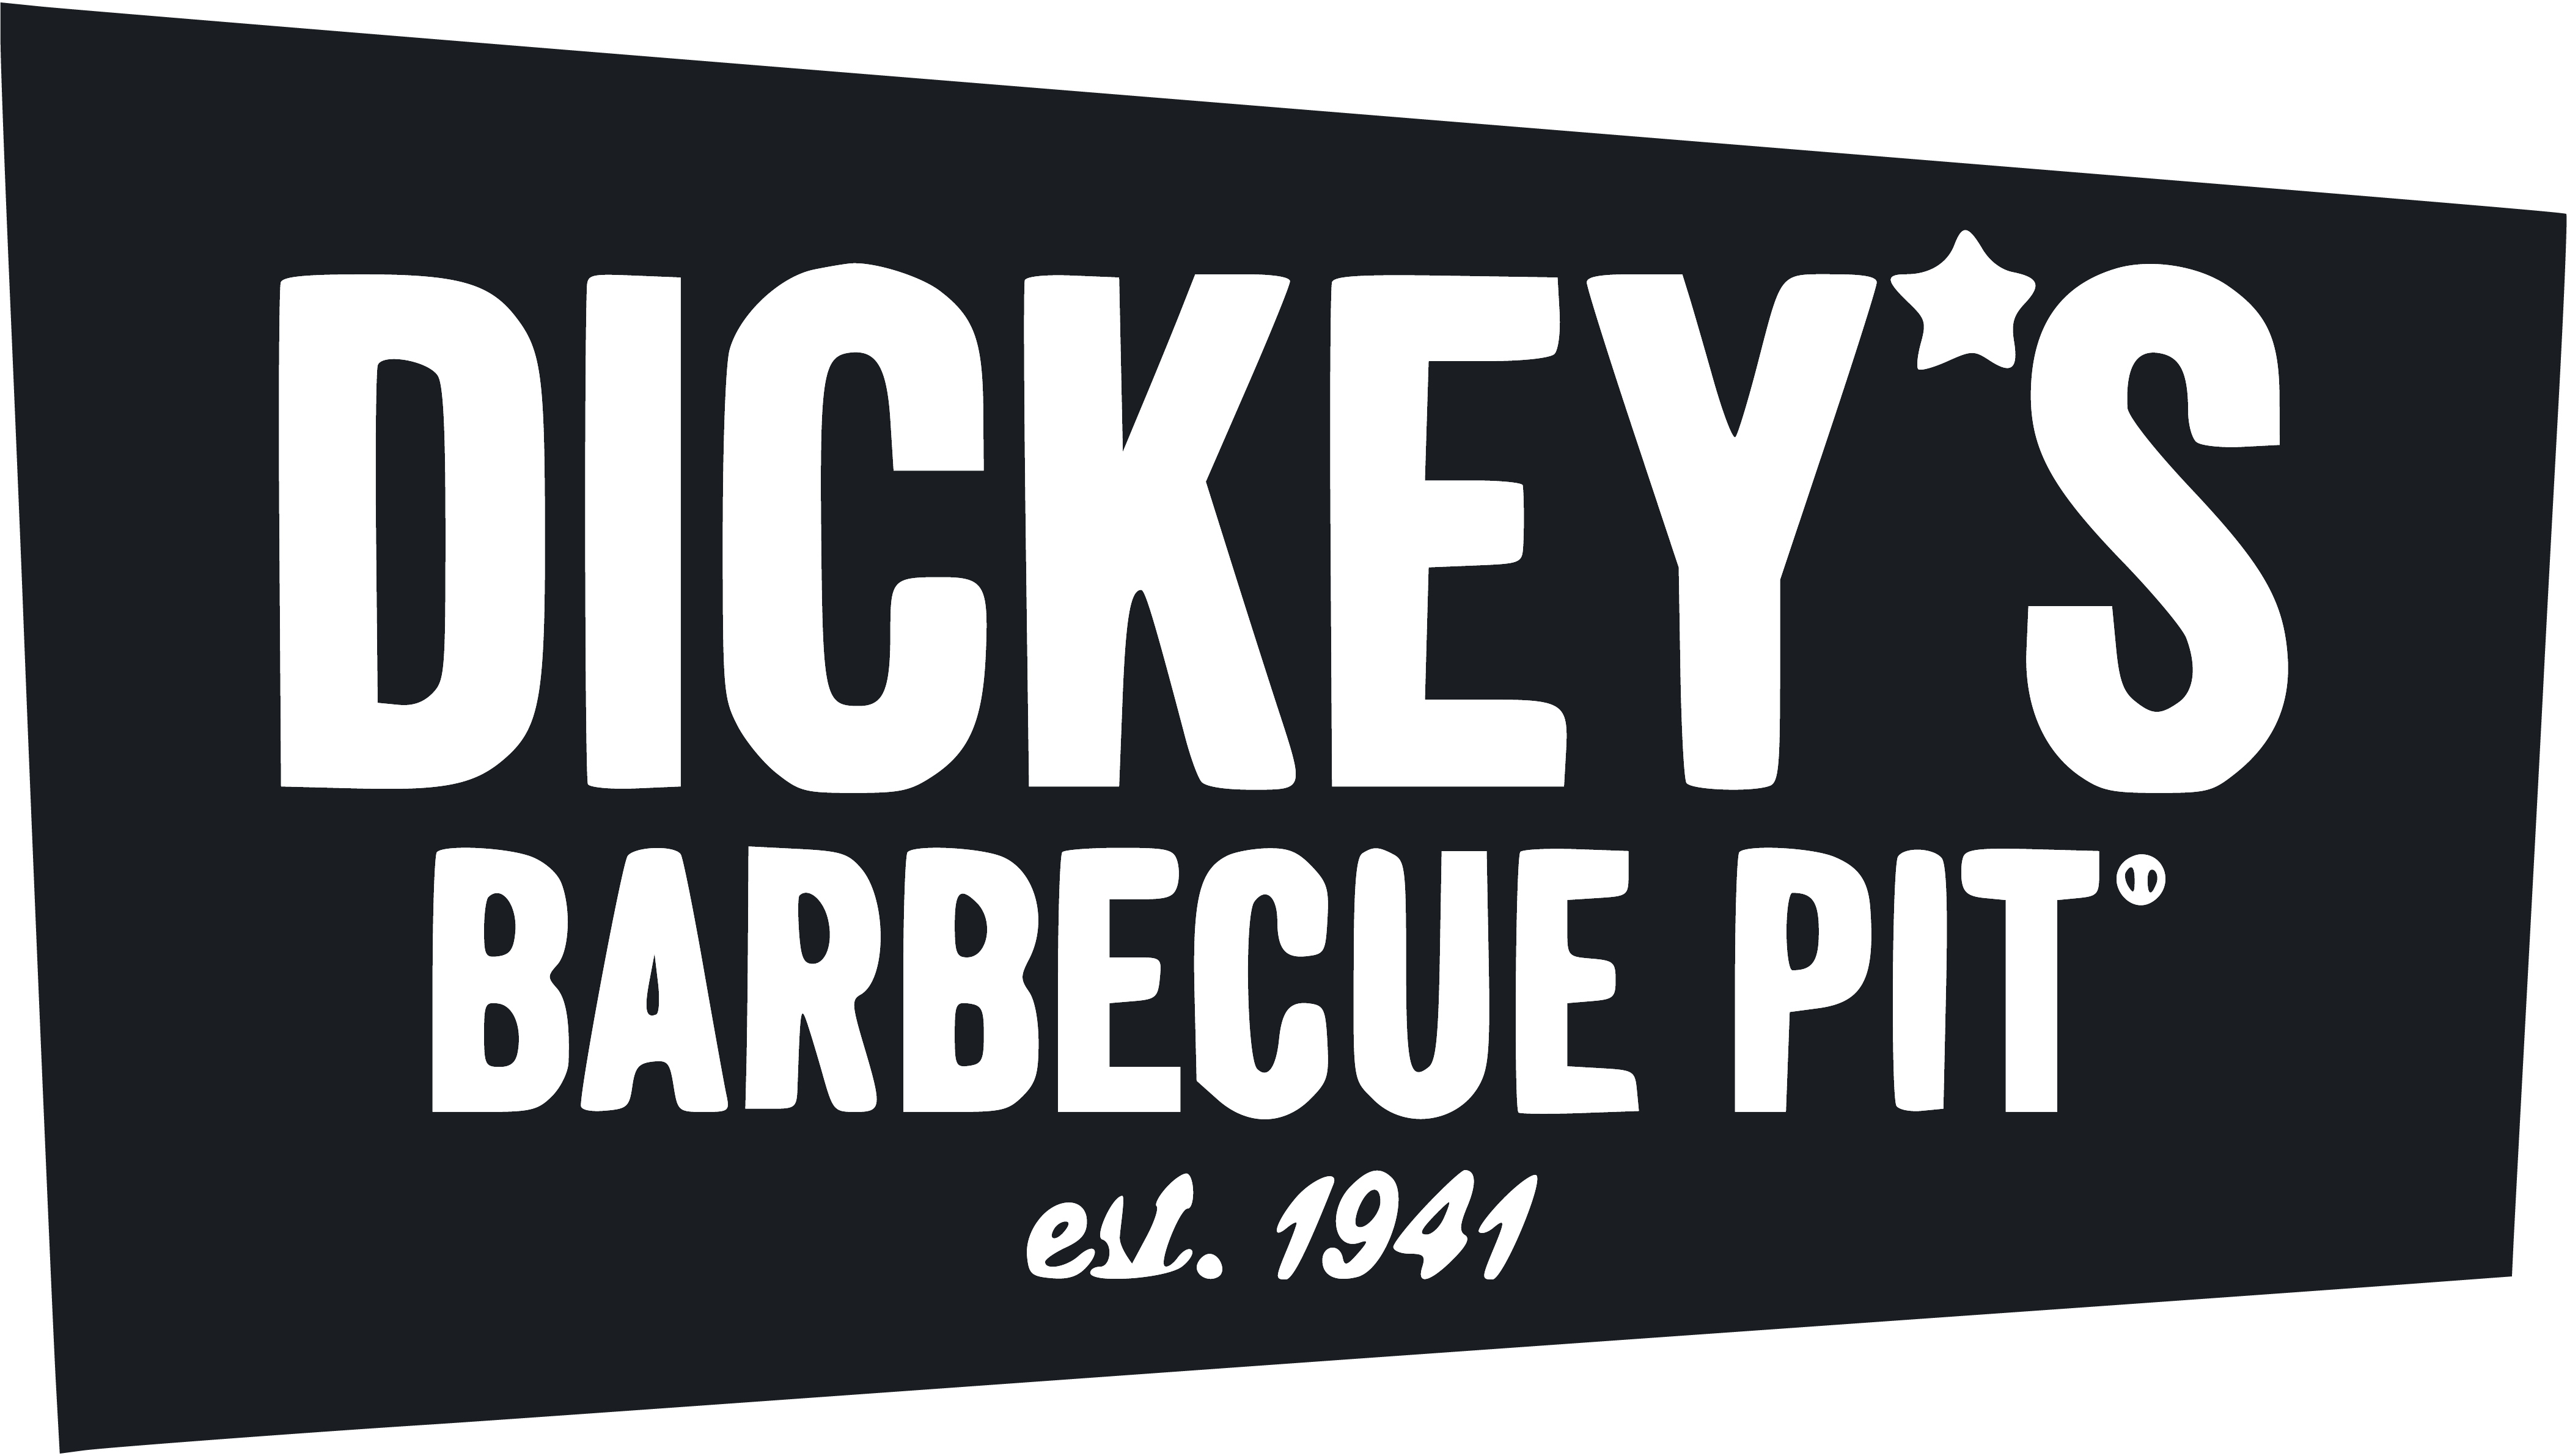 Dickeys BBQ